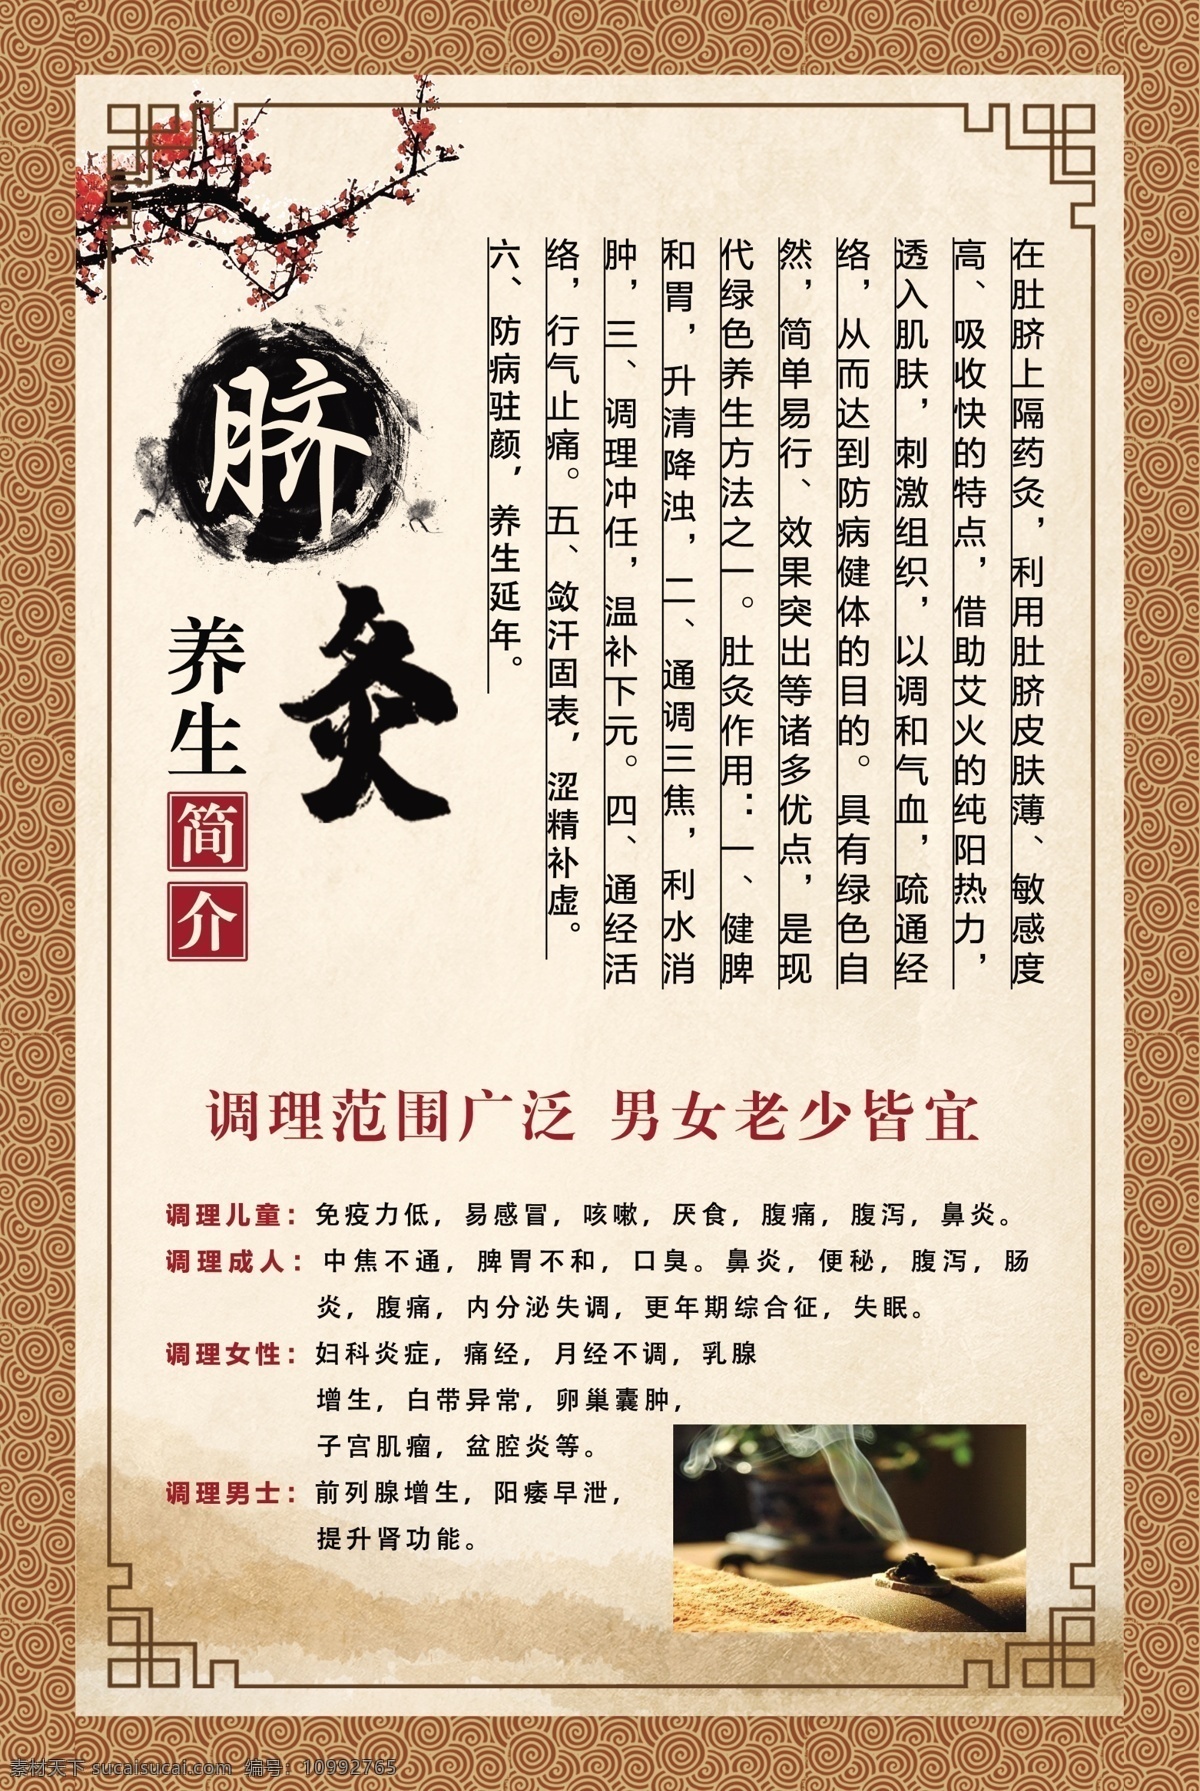 艾灸 脐灸 养生灸 健康灸 健康养生 脐灸简介 养生简介 中国风 psd素材 文化艺术 传统文化